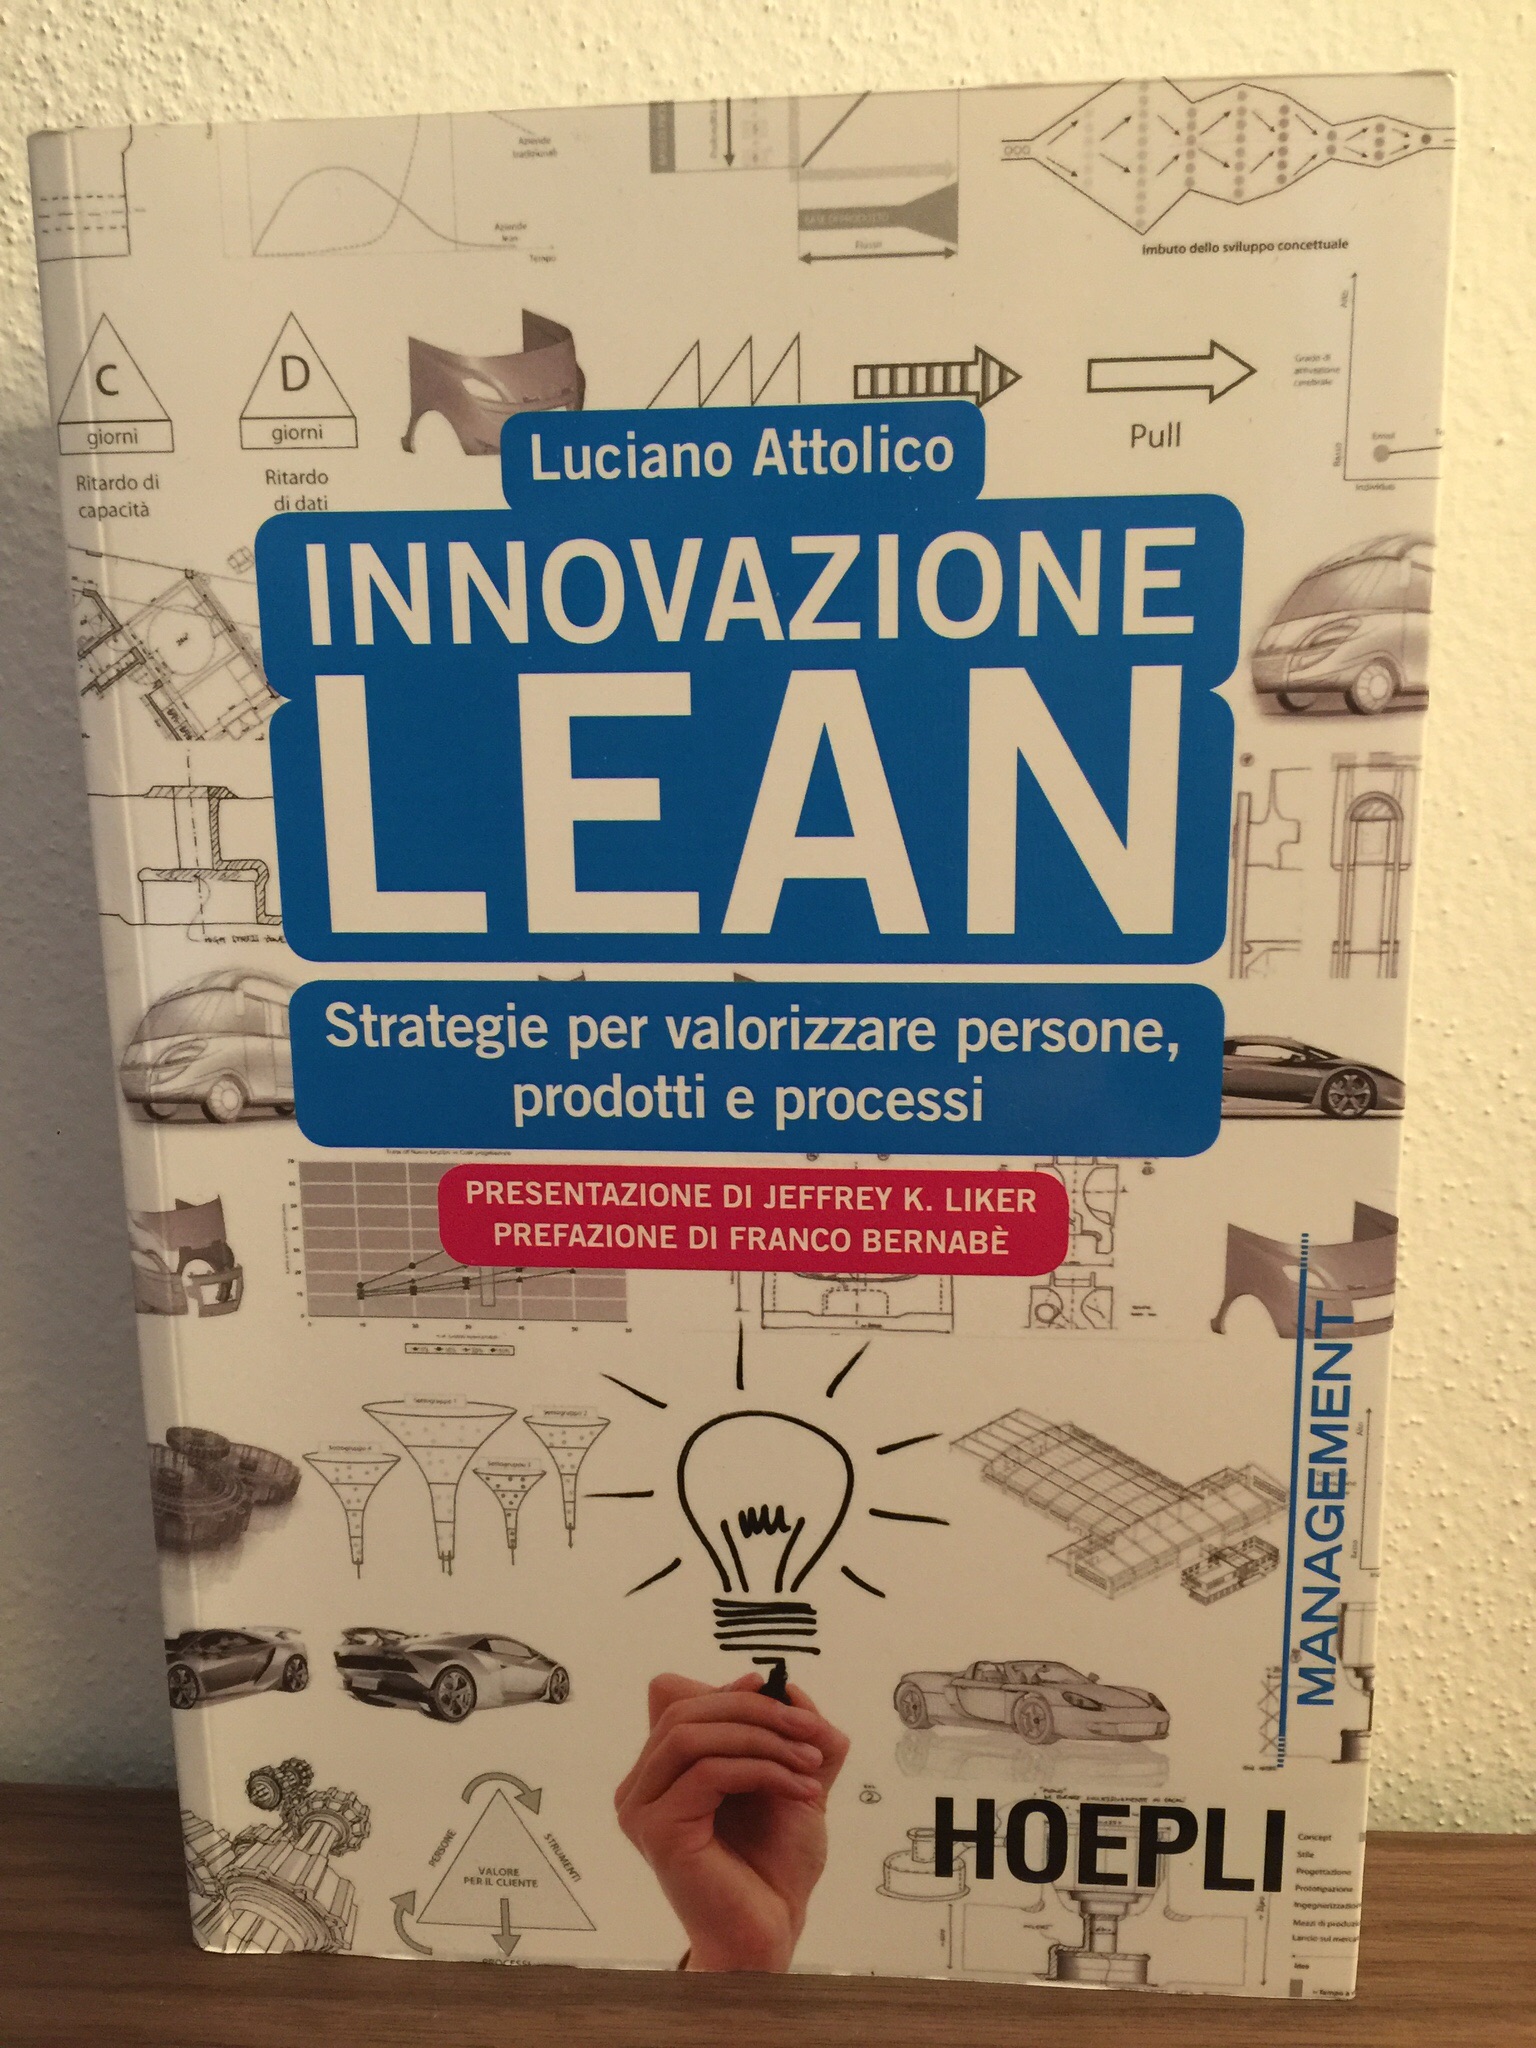 Innovazione LEAN – Luciano Attolico